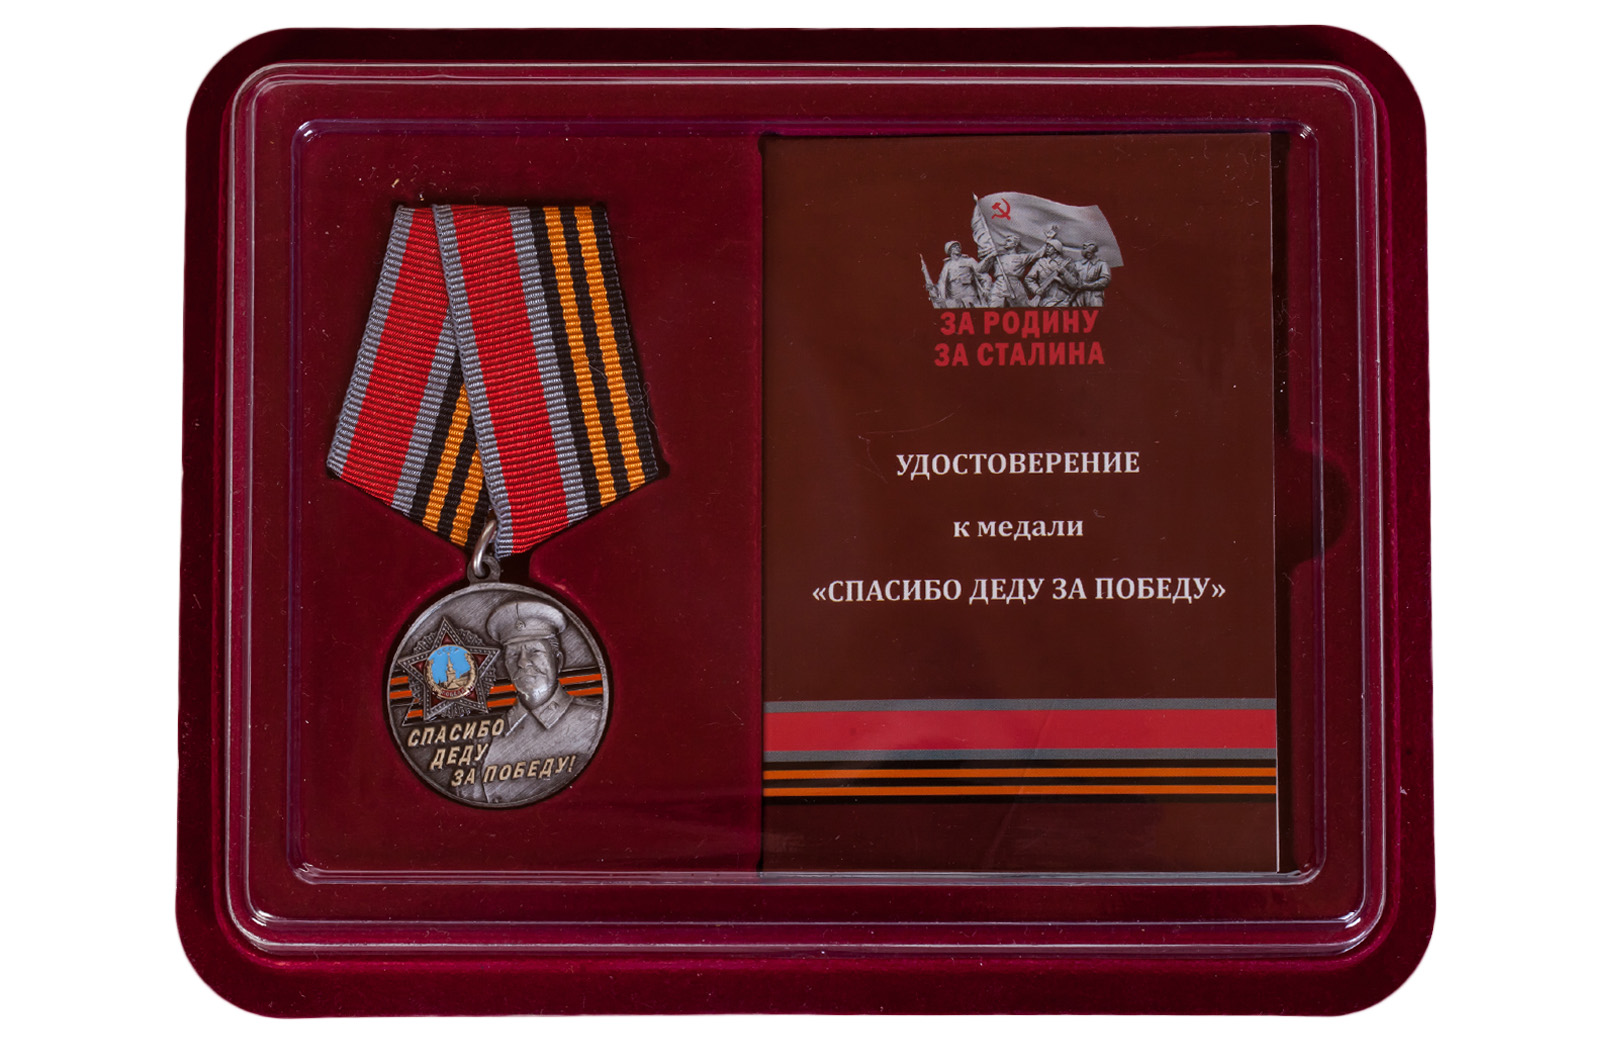 Купить латунную медаль со Сталиным Спасибо деду за Победу! в подарок